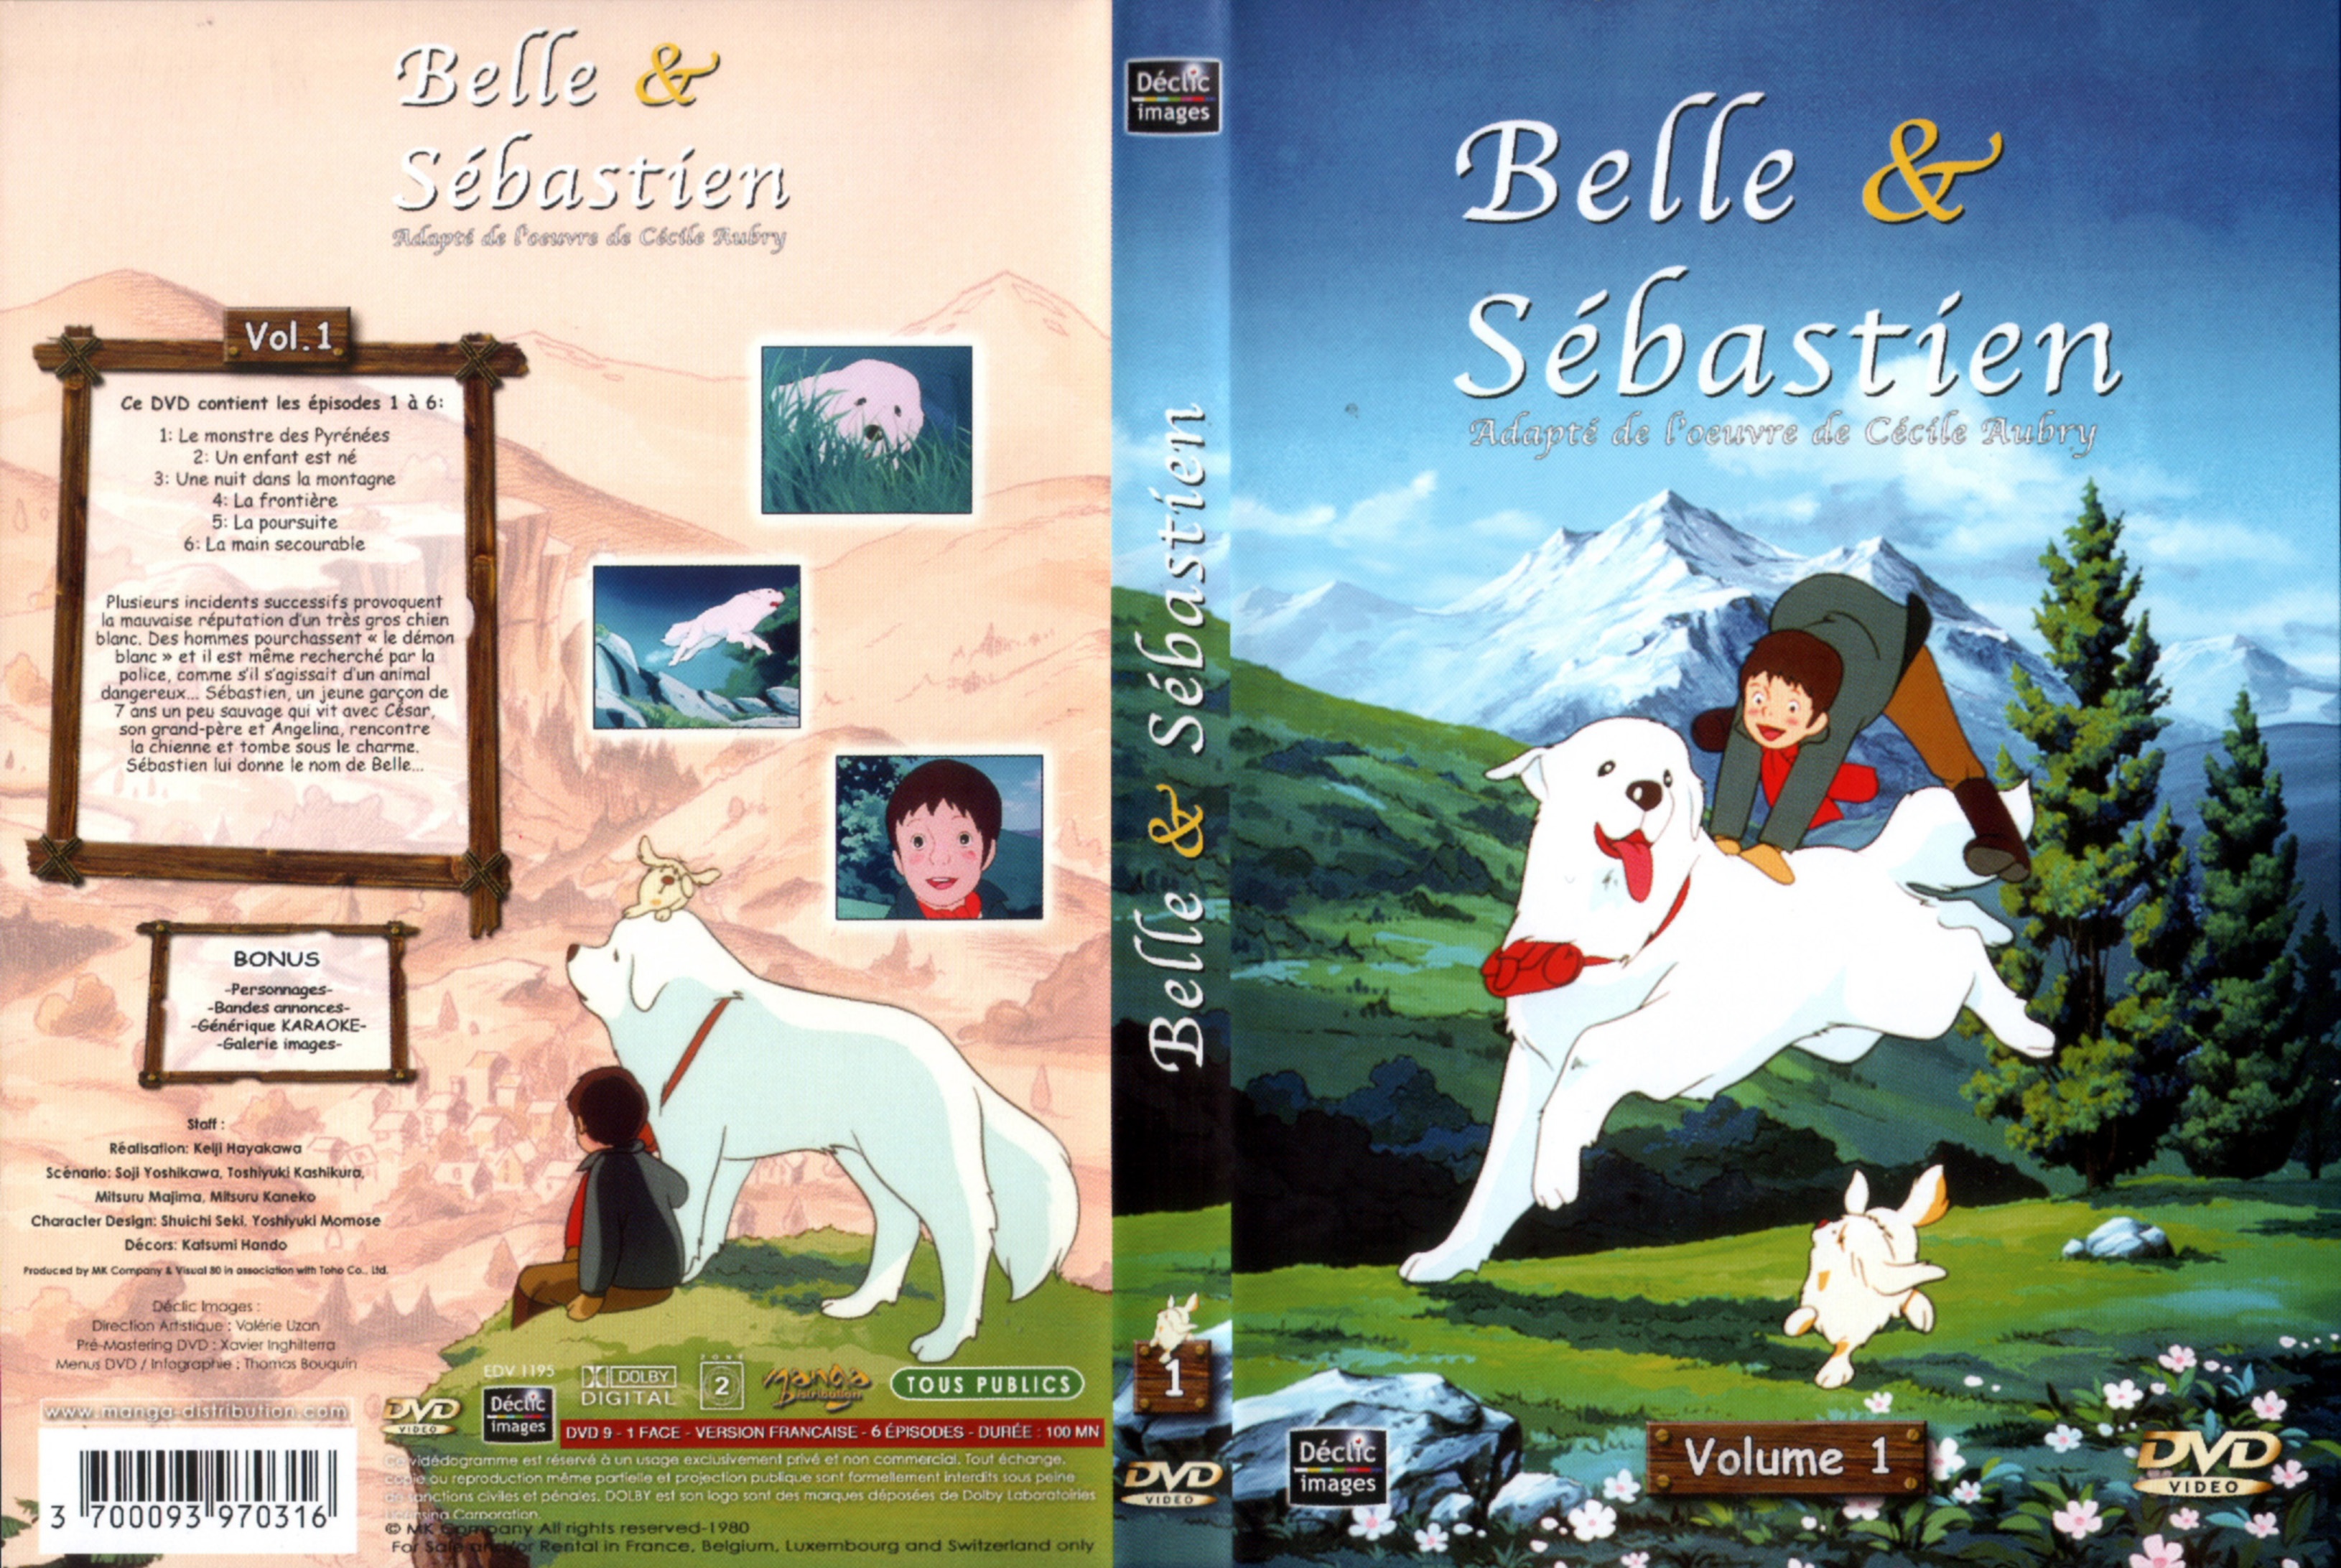 Jaquette DVD Belle et Sebastien DVD 01